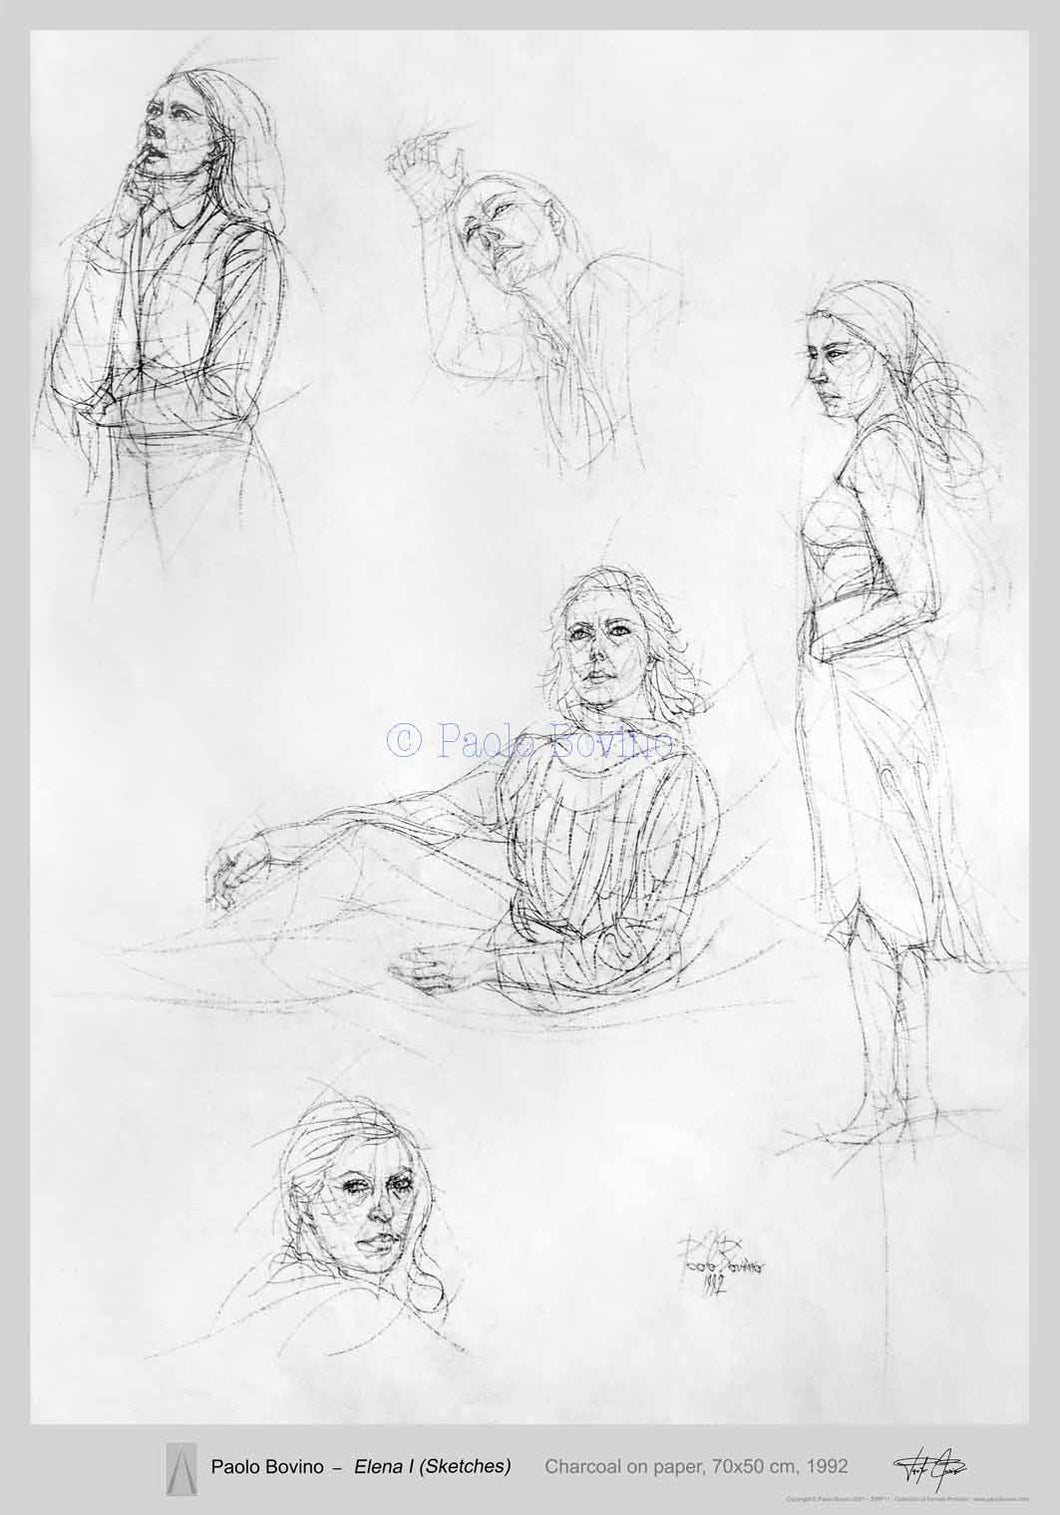 Elena I (Sketches)